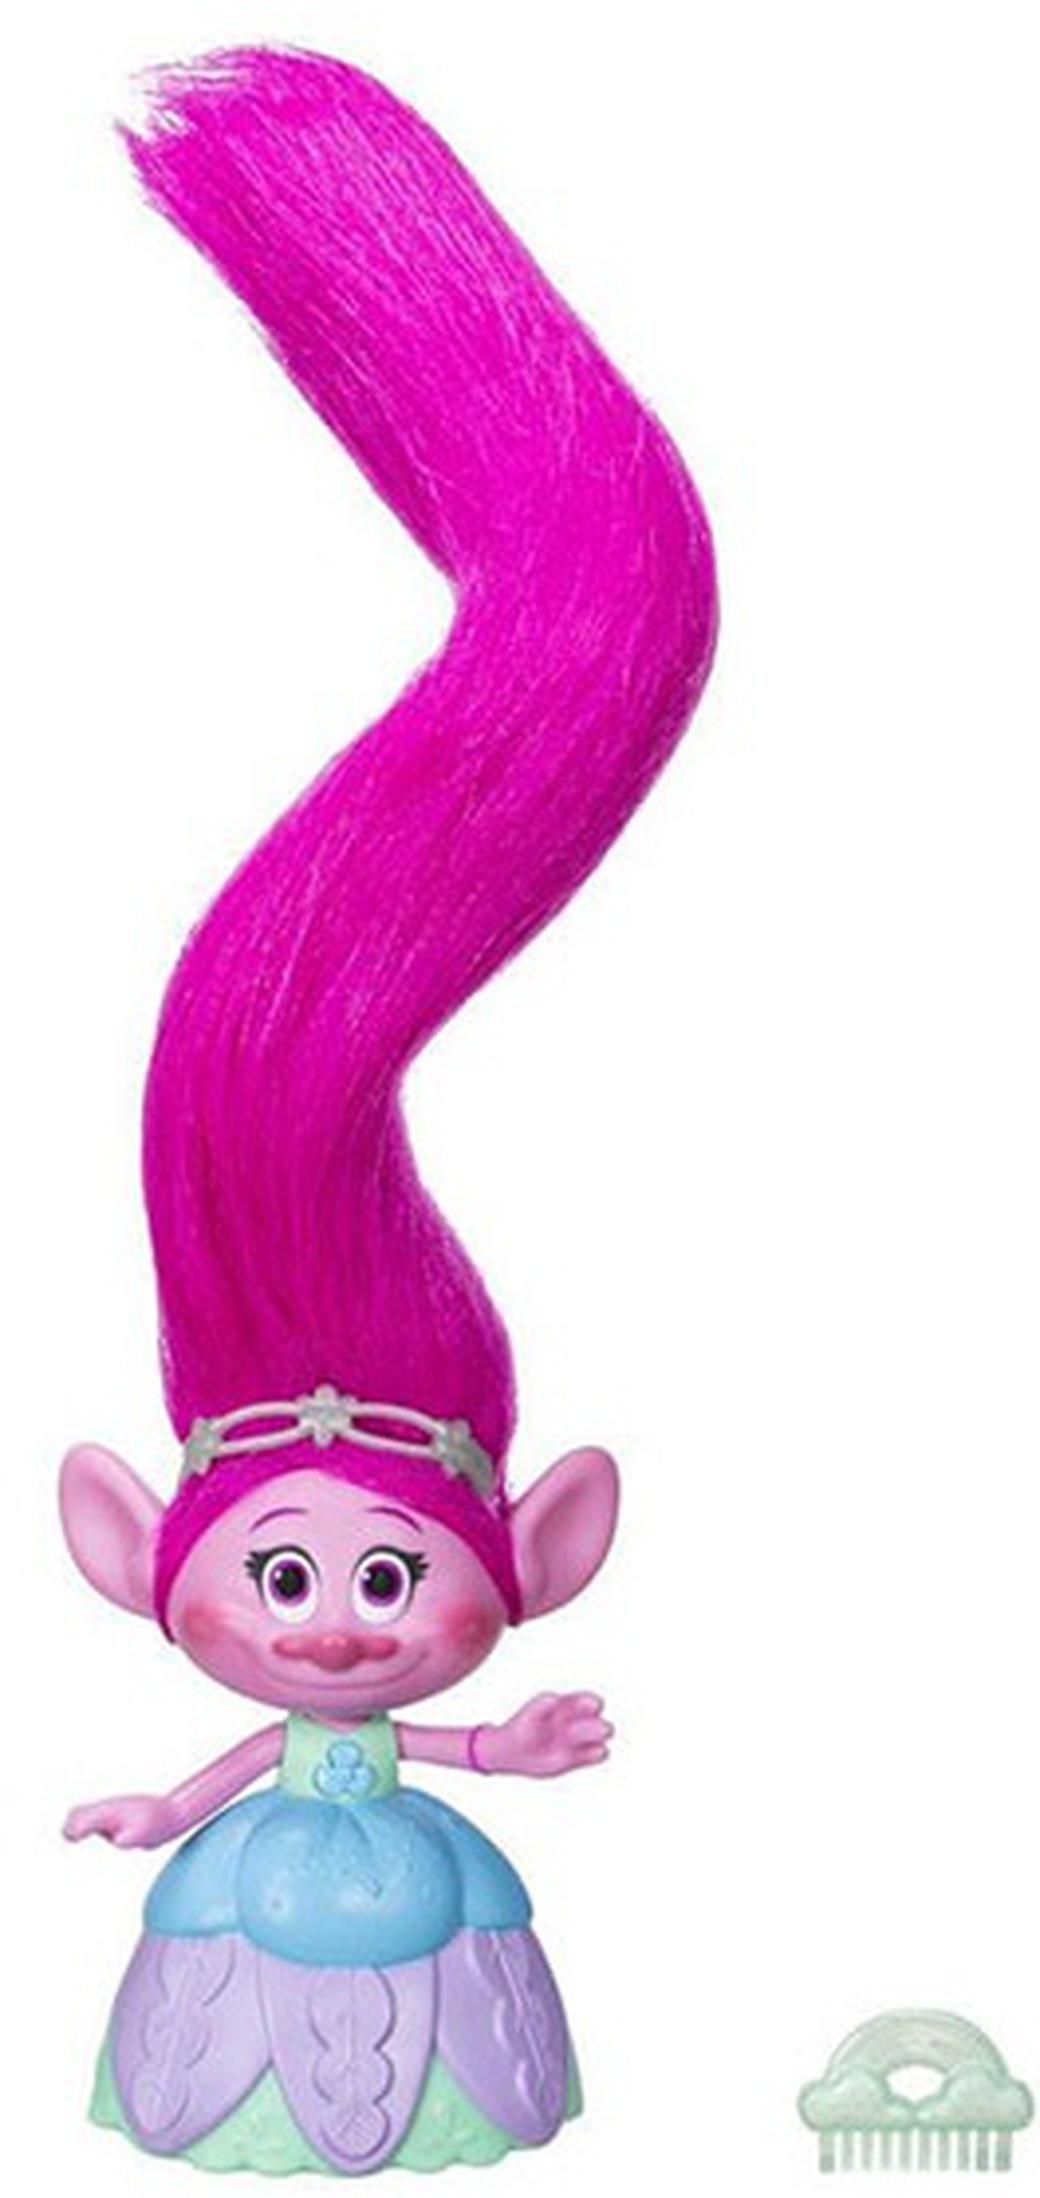 Игрушка Hasbro Trolls Поопи с супер длинными поднимающимися волосами C1305 фото